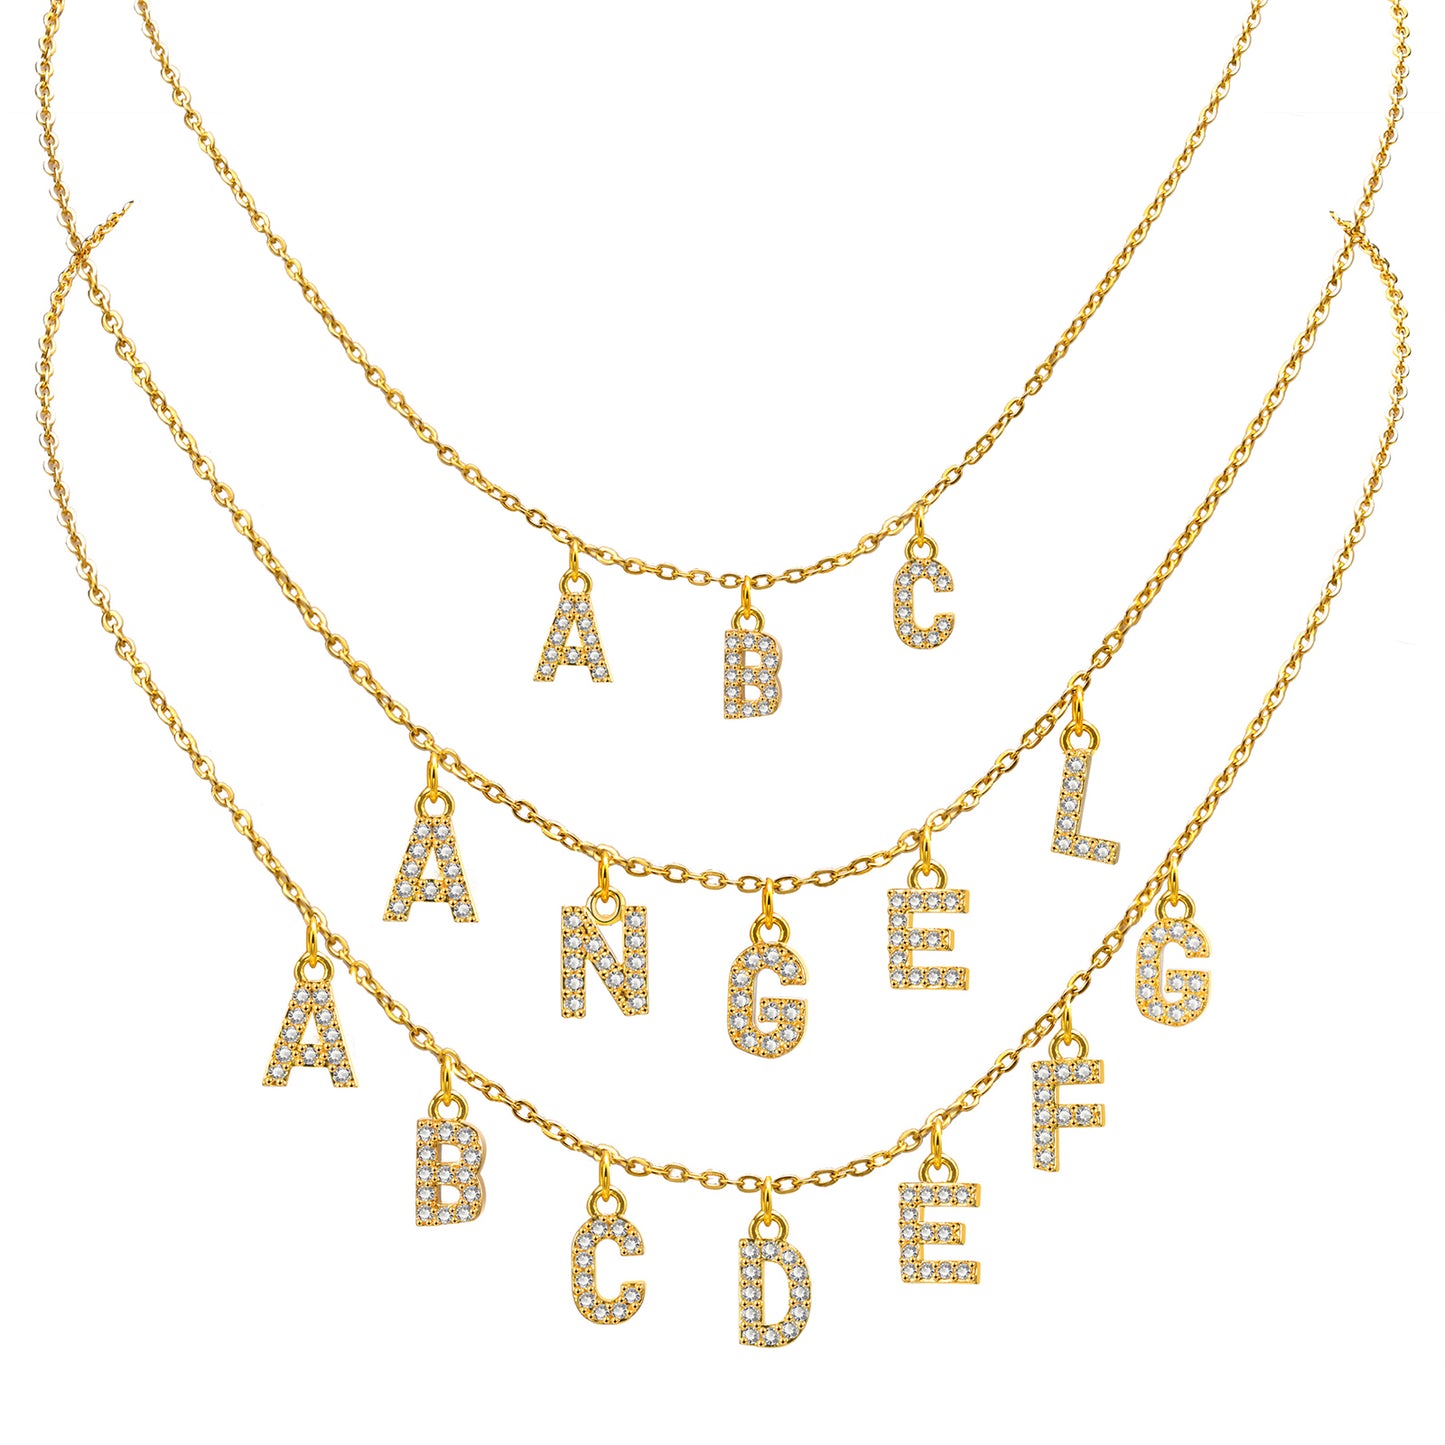 Halskette mit Zirkoni Buchstaben-Anhänger. von 1 bis 12 Buchstaben können auswählen